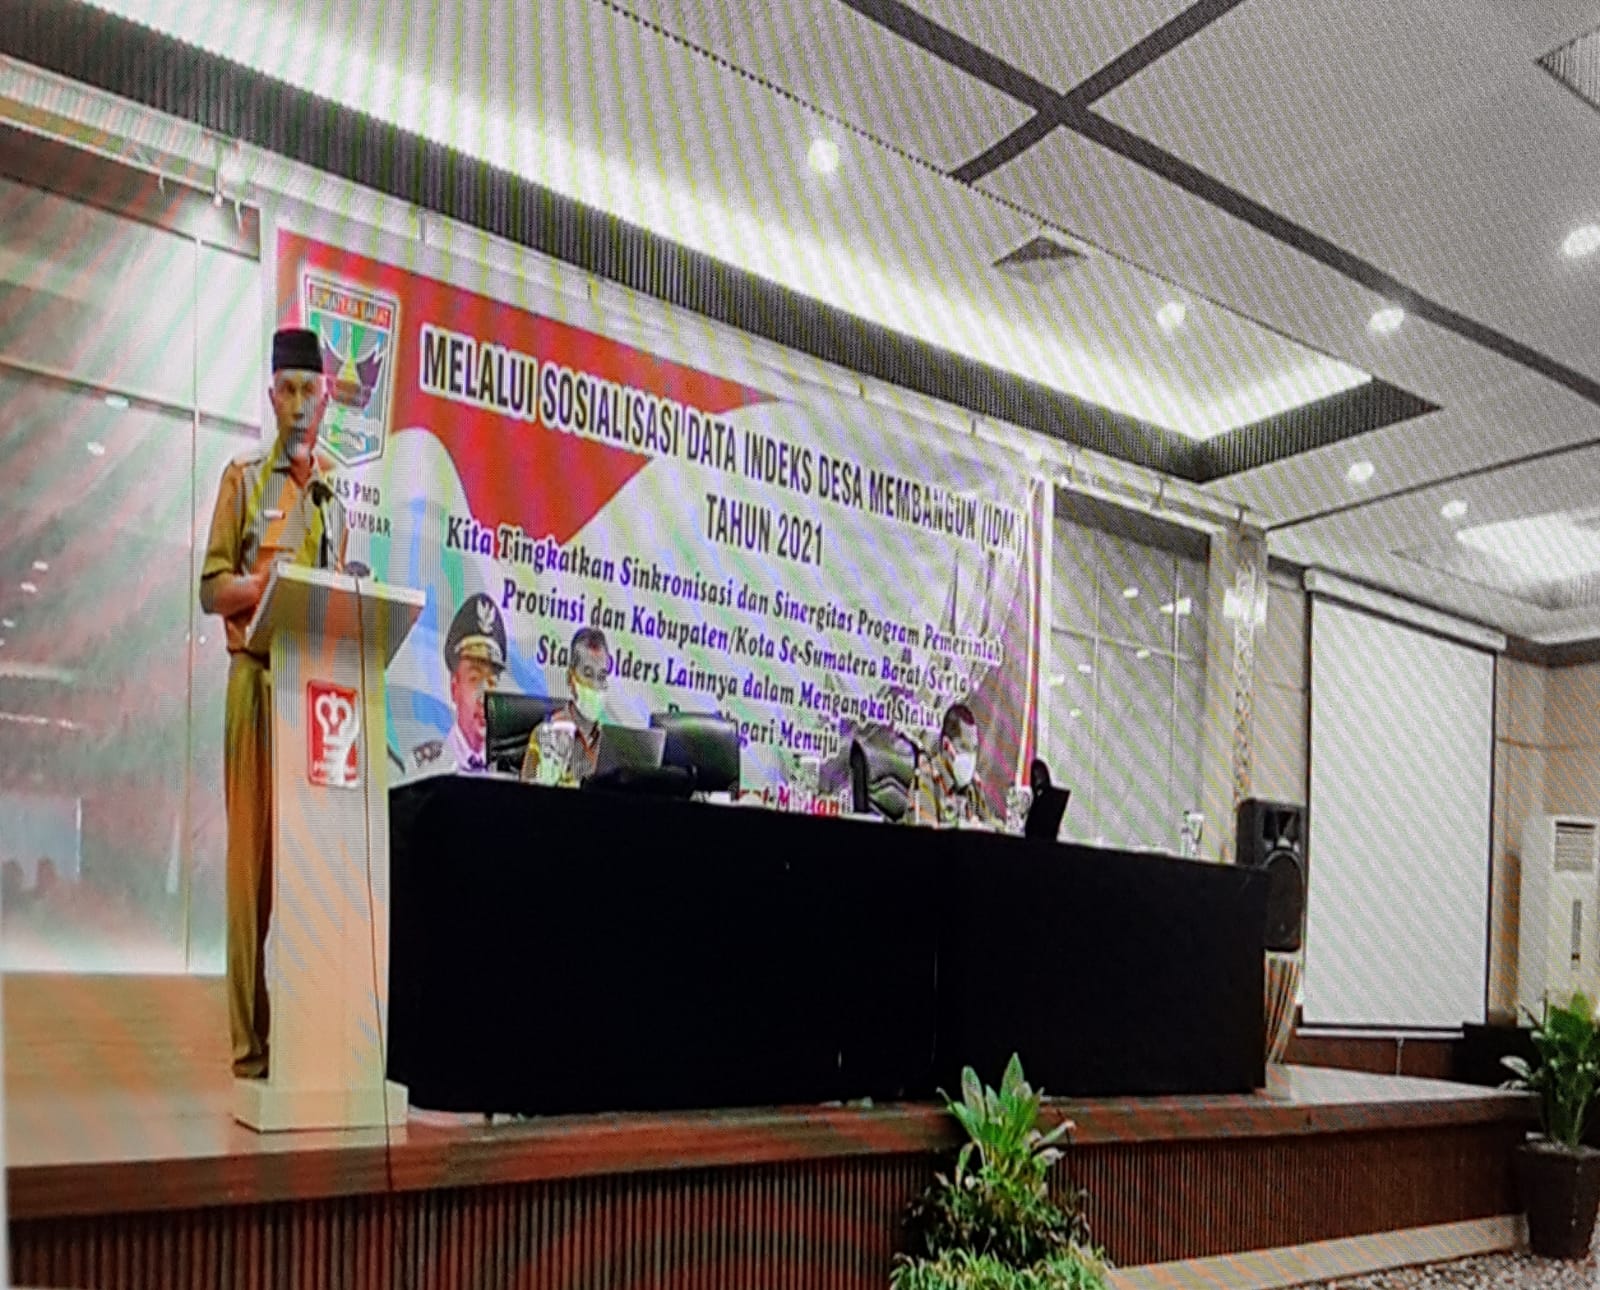 Gubernur Sumbar Mahyeldi Resmikan Pembukaan Sosialisasi Data Indek Desa Membangun (IDM) Provinsi Sumatera Barat Tahun 2021